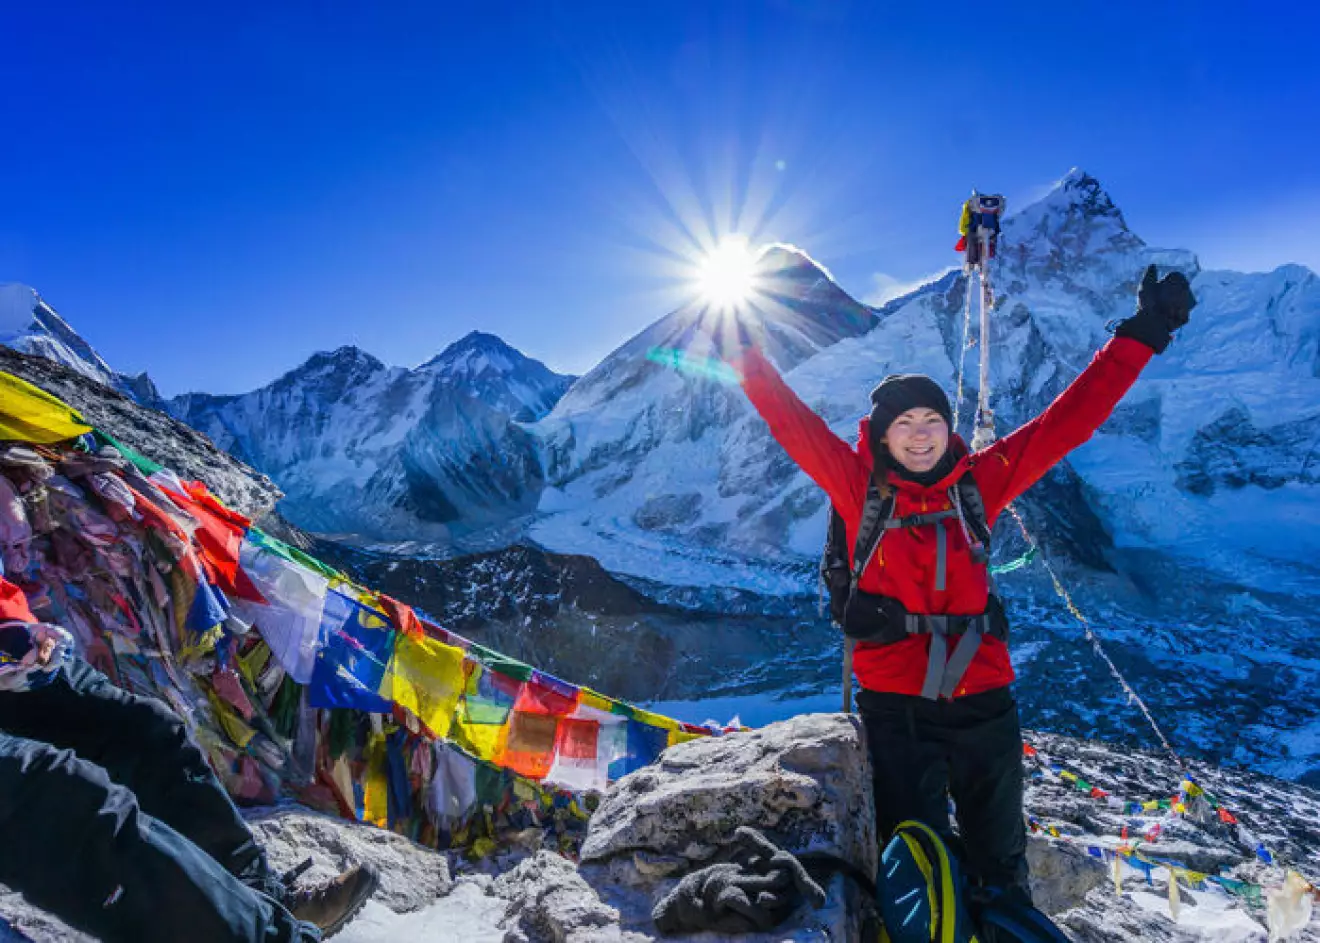 Ida framför Mount Everest, på resan som gjorde att livet vände till det bättre.